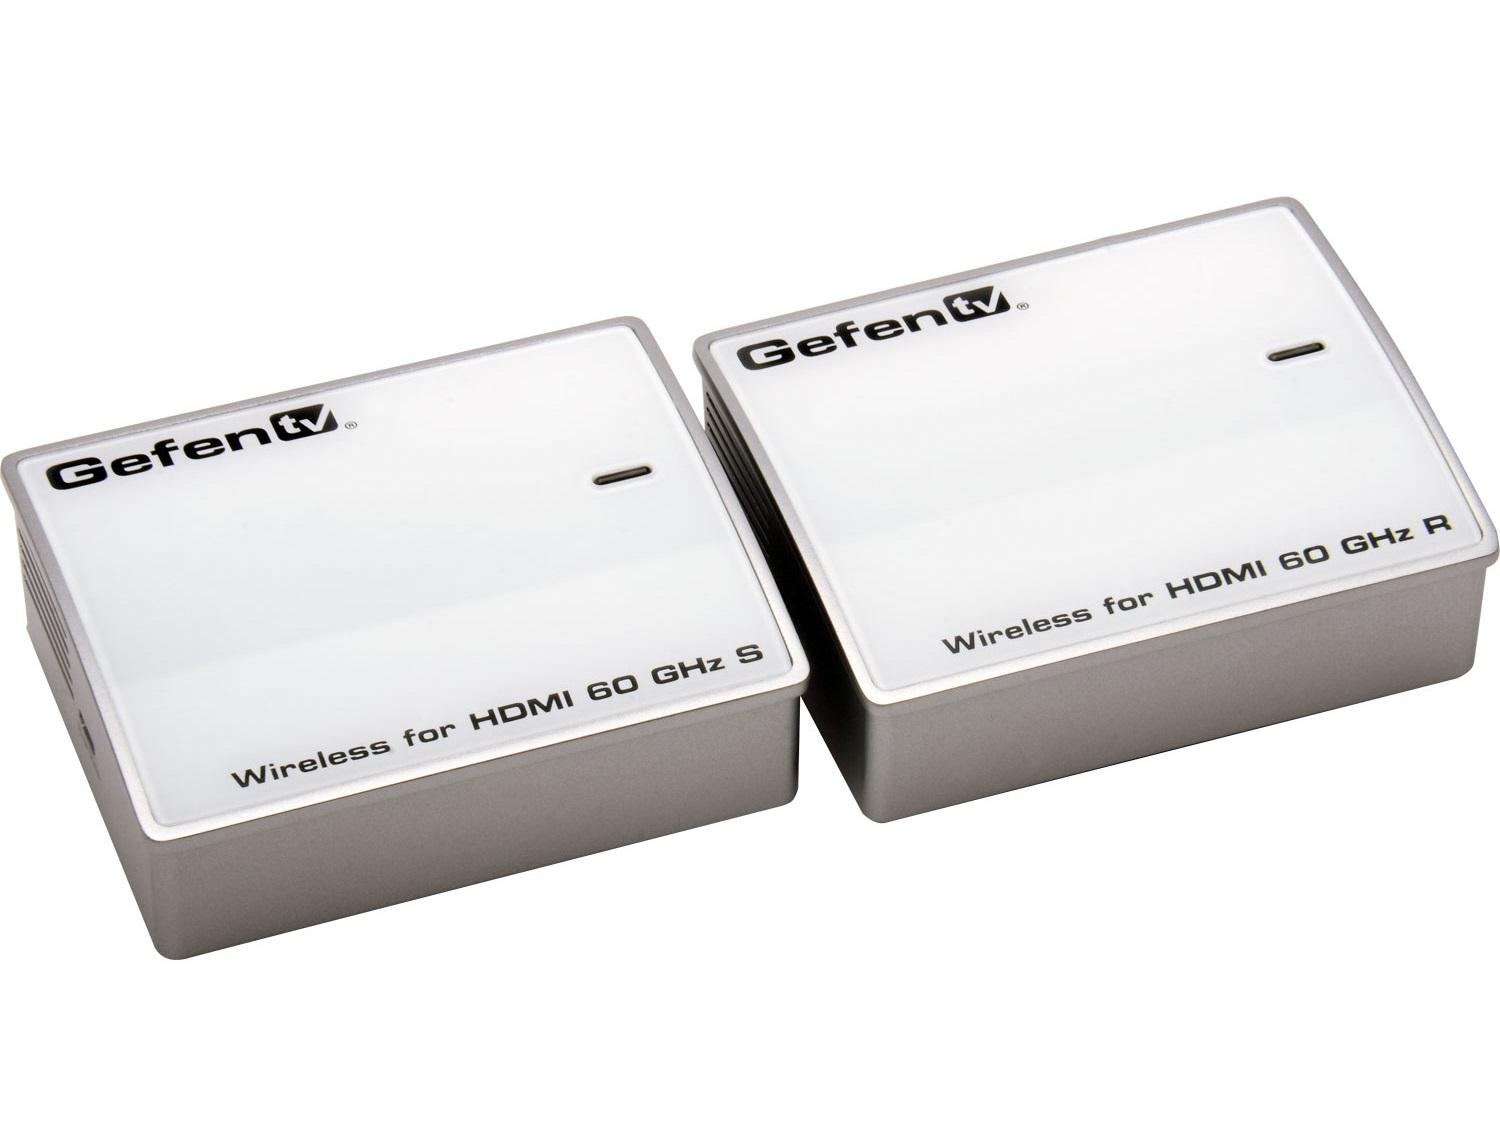 Gefen GTV-WHD-60G Wireless for HDMI 60 GHz Extender (Receiver/Sender) Kit